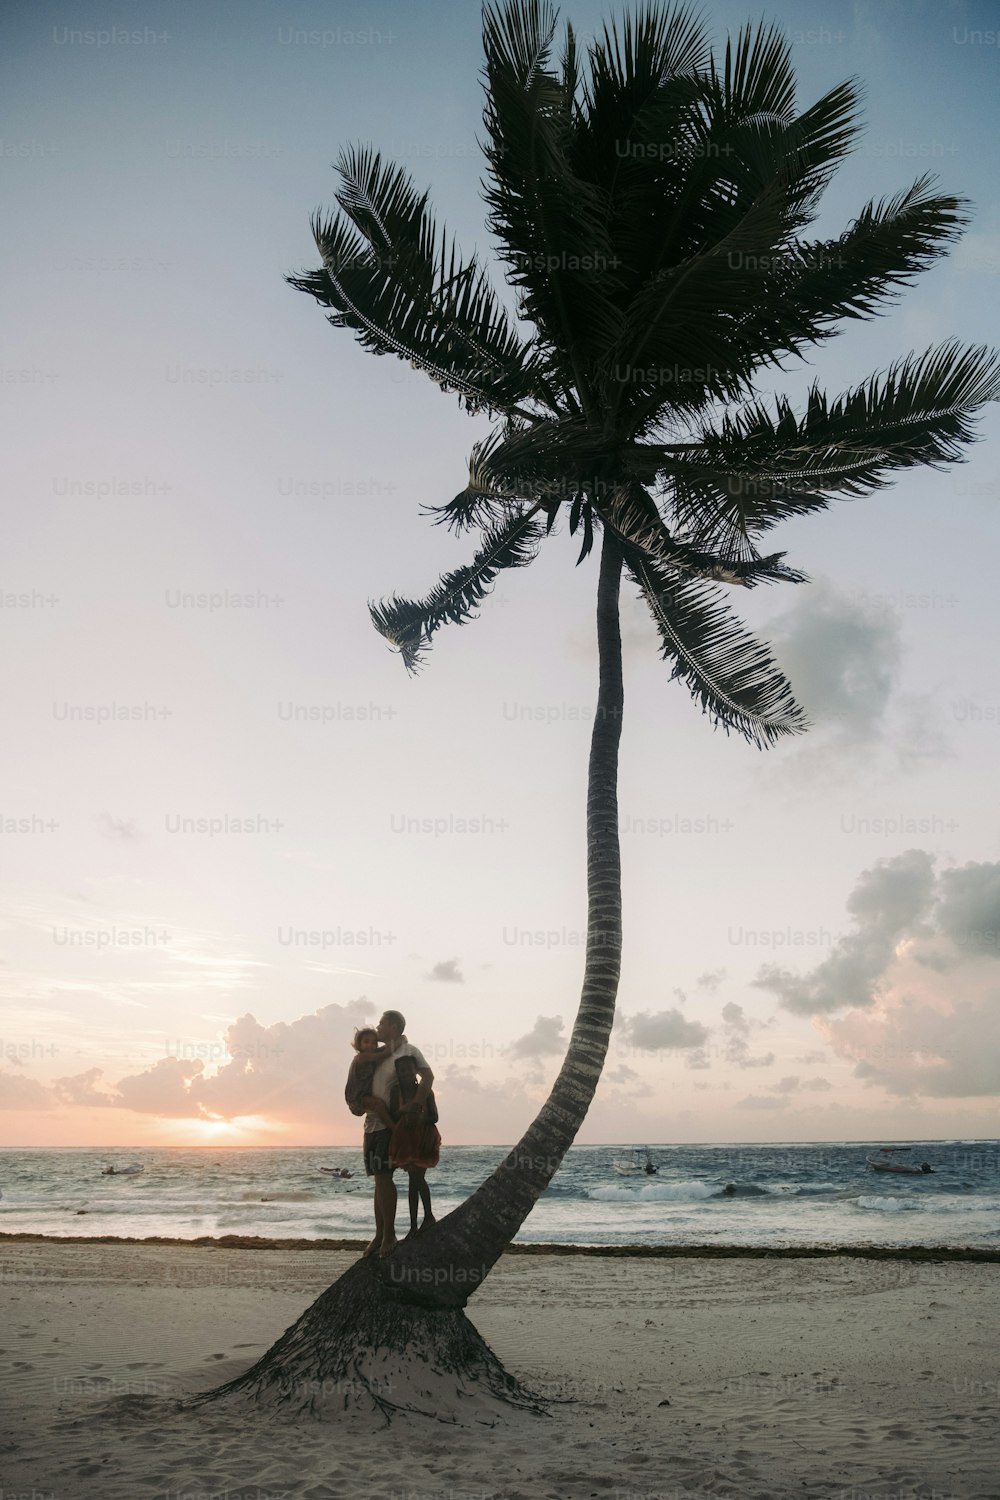 Ein Mann steht auf einer Palme neben dem Meer